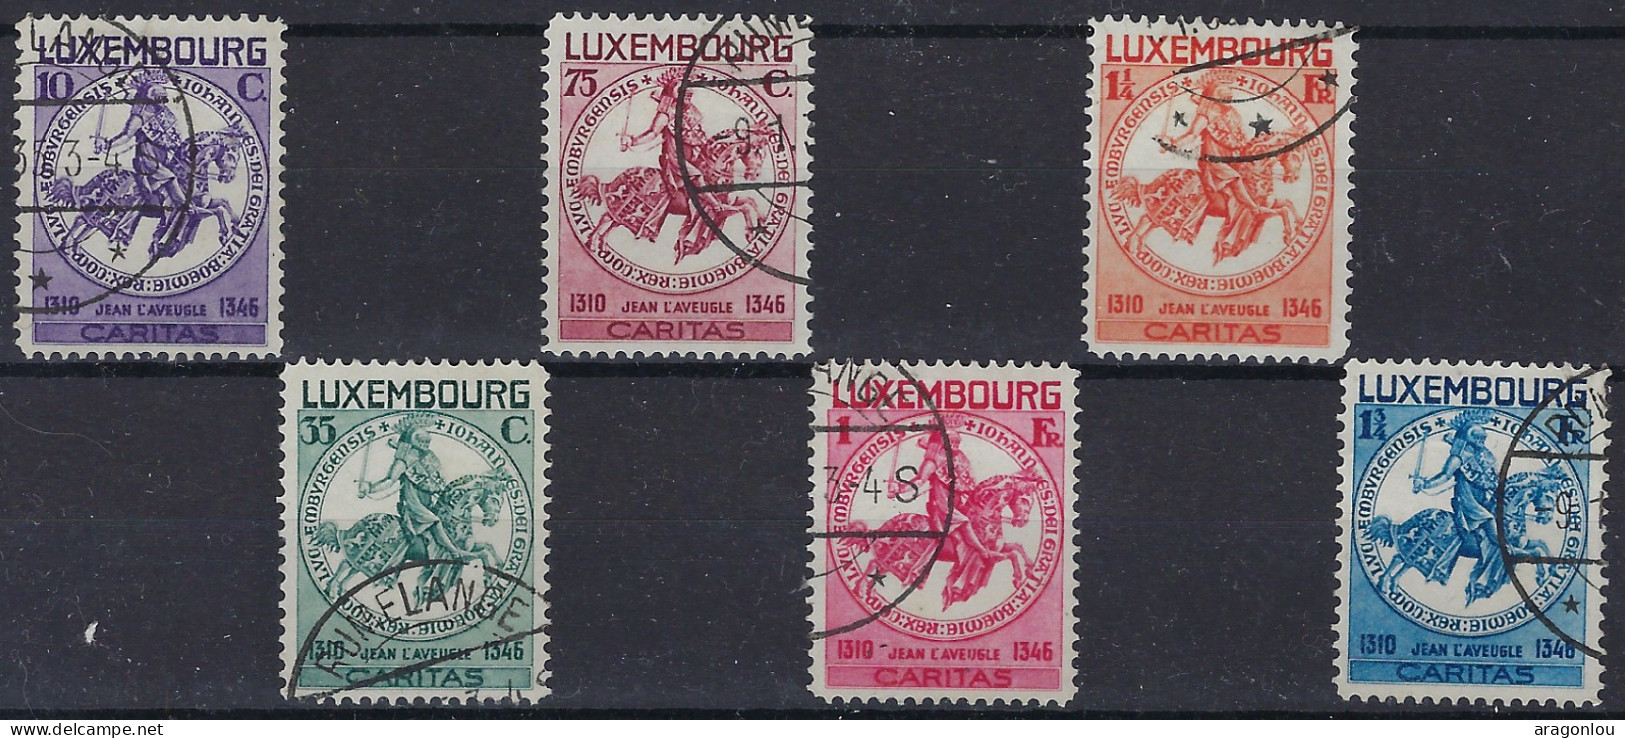 Luxembourg - Luxemburg - Timbres  1934  Série    Sceau De Jean L'Aveugle    °   VC.200,- - Usati